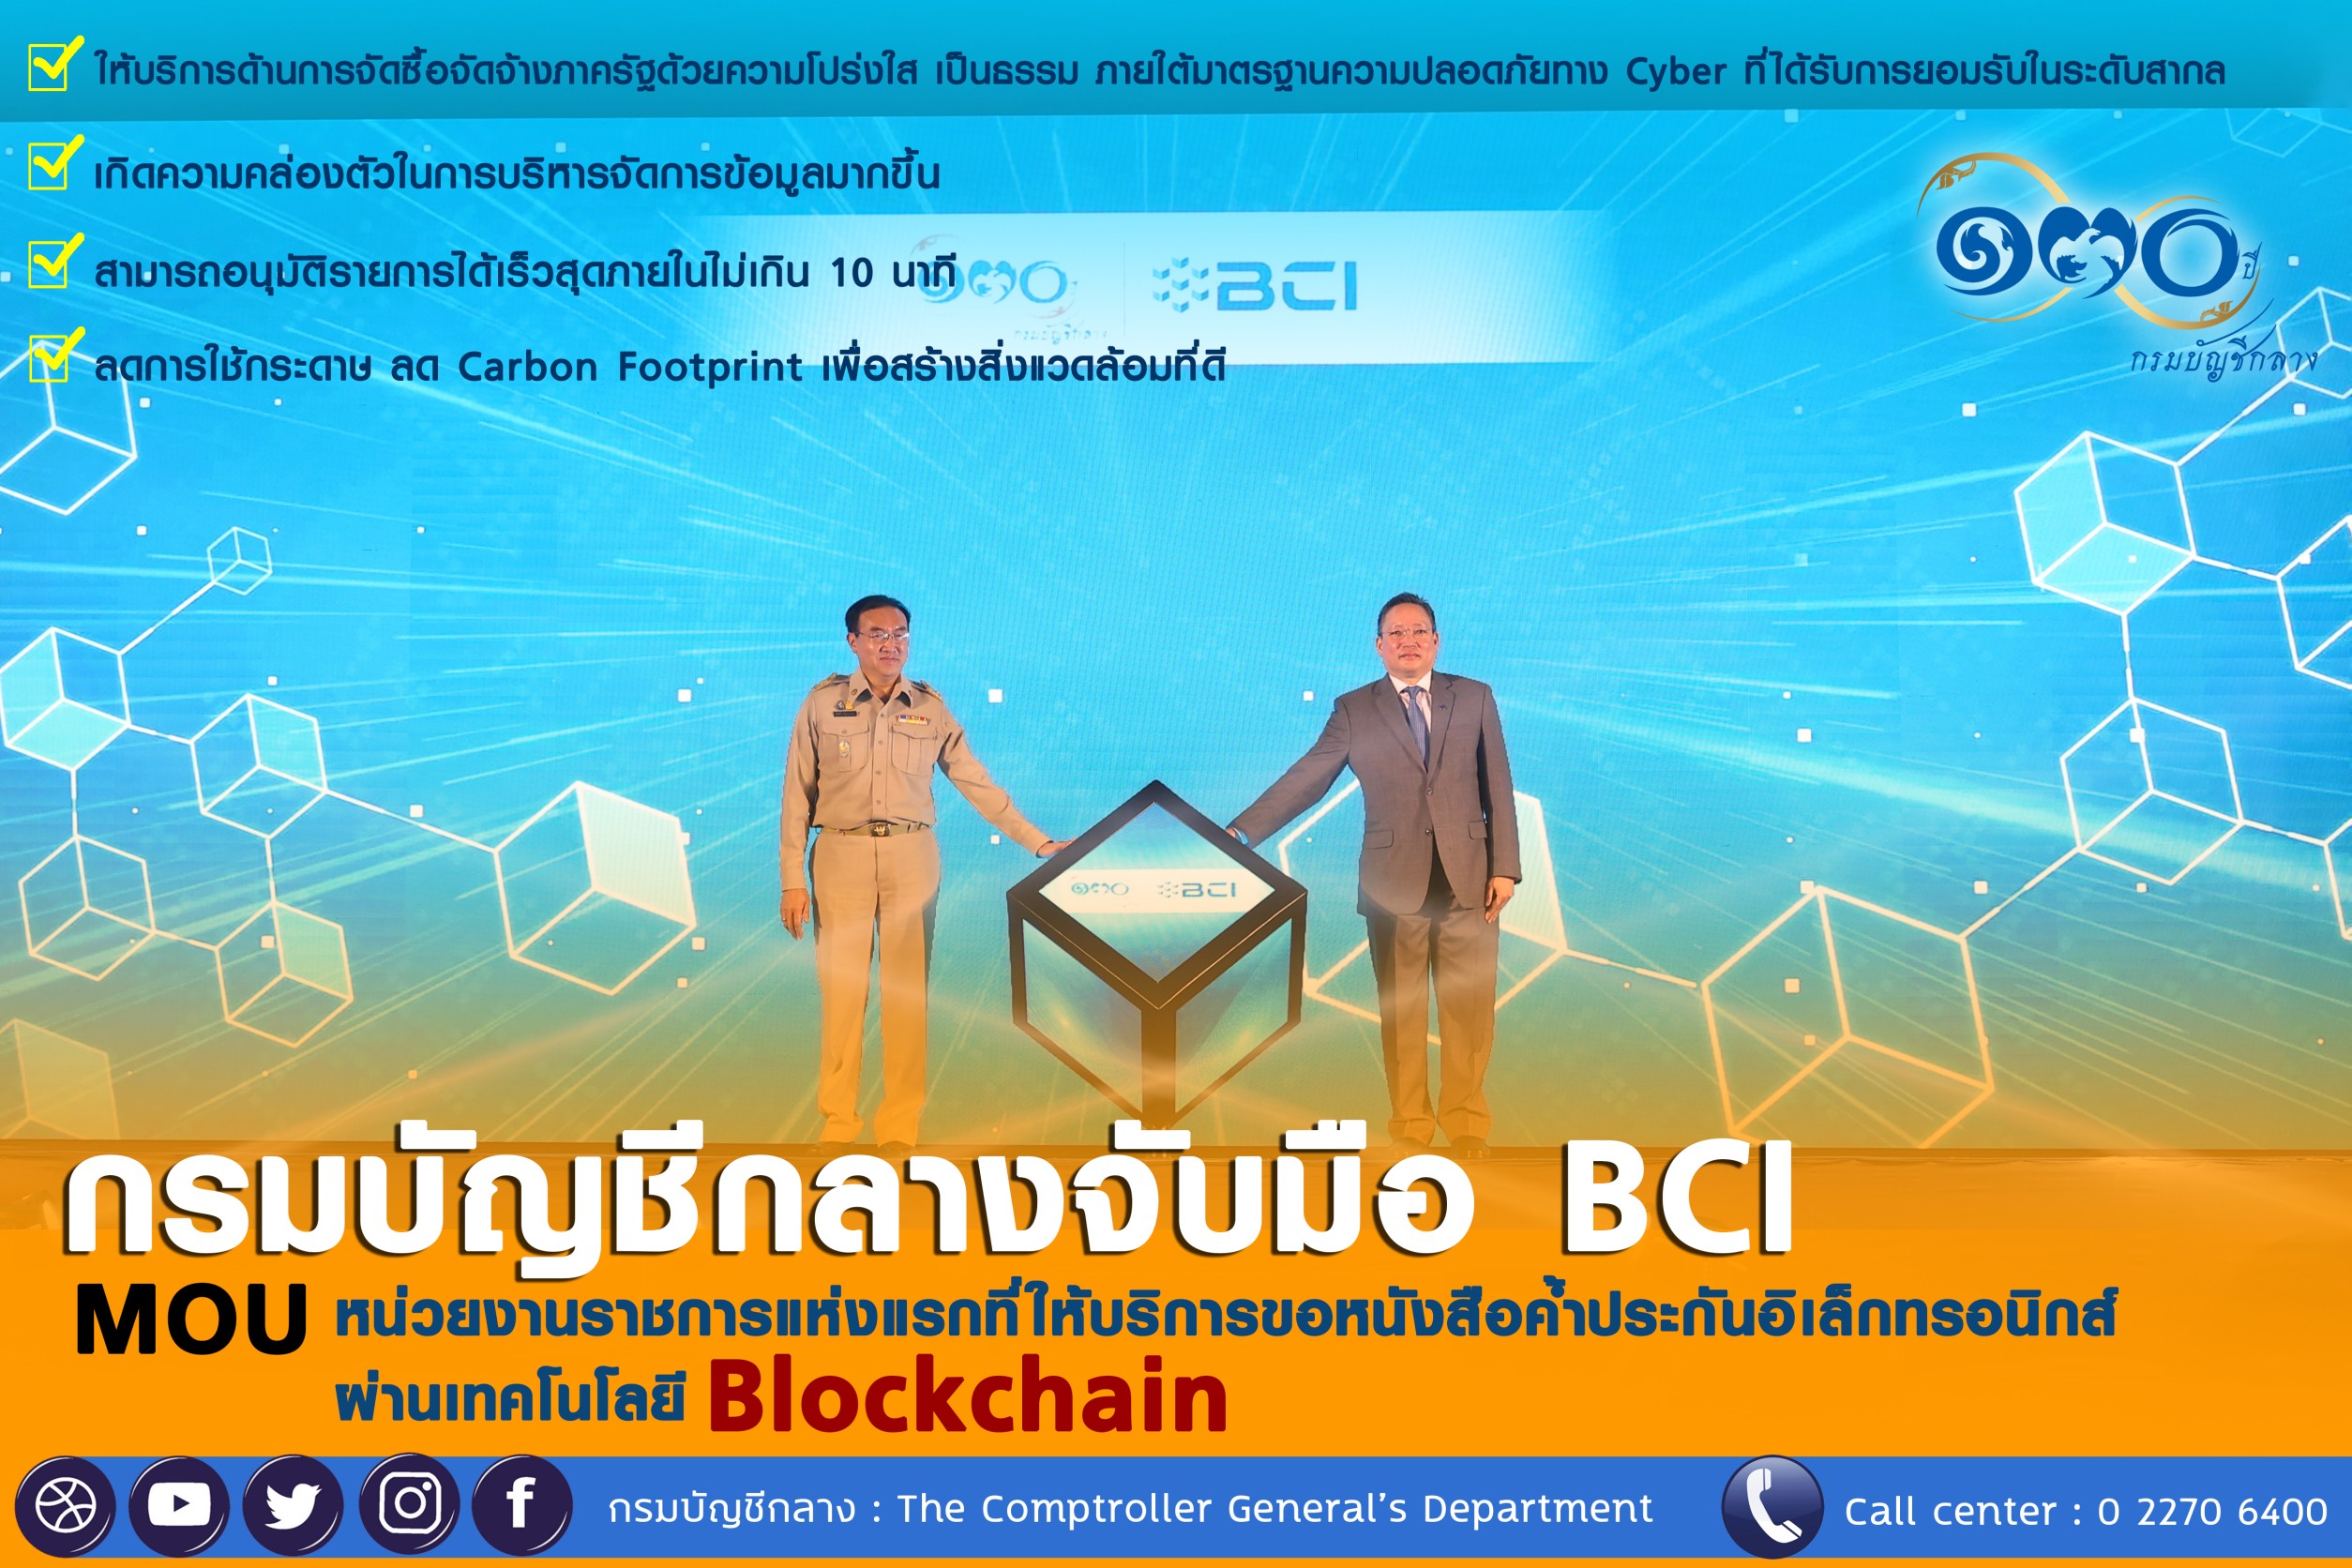 กรมบัญชีกลางจับมือ BCI ให้บริการหนังสือค้ำประกันอิเล็กทรอนิกส์ผ่าน Blockchain